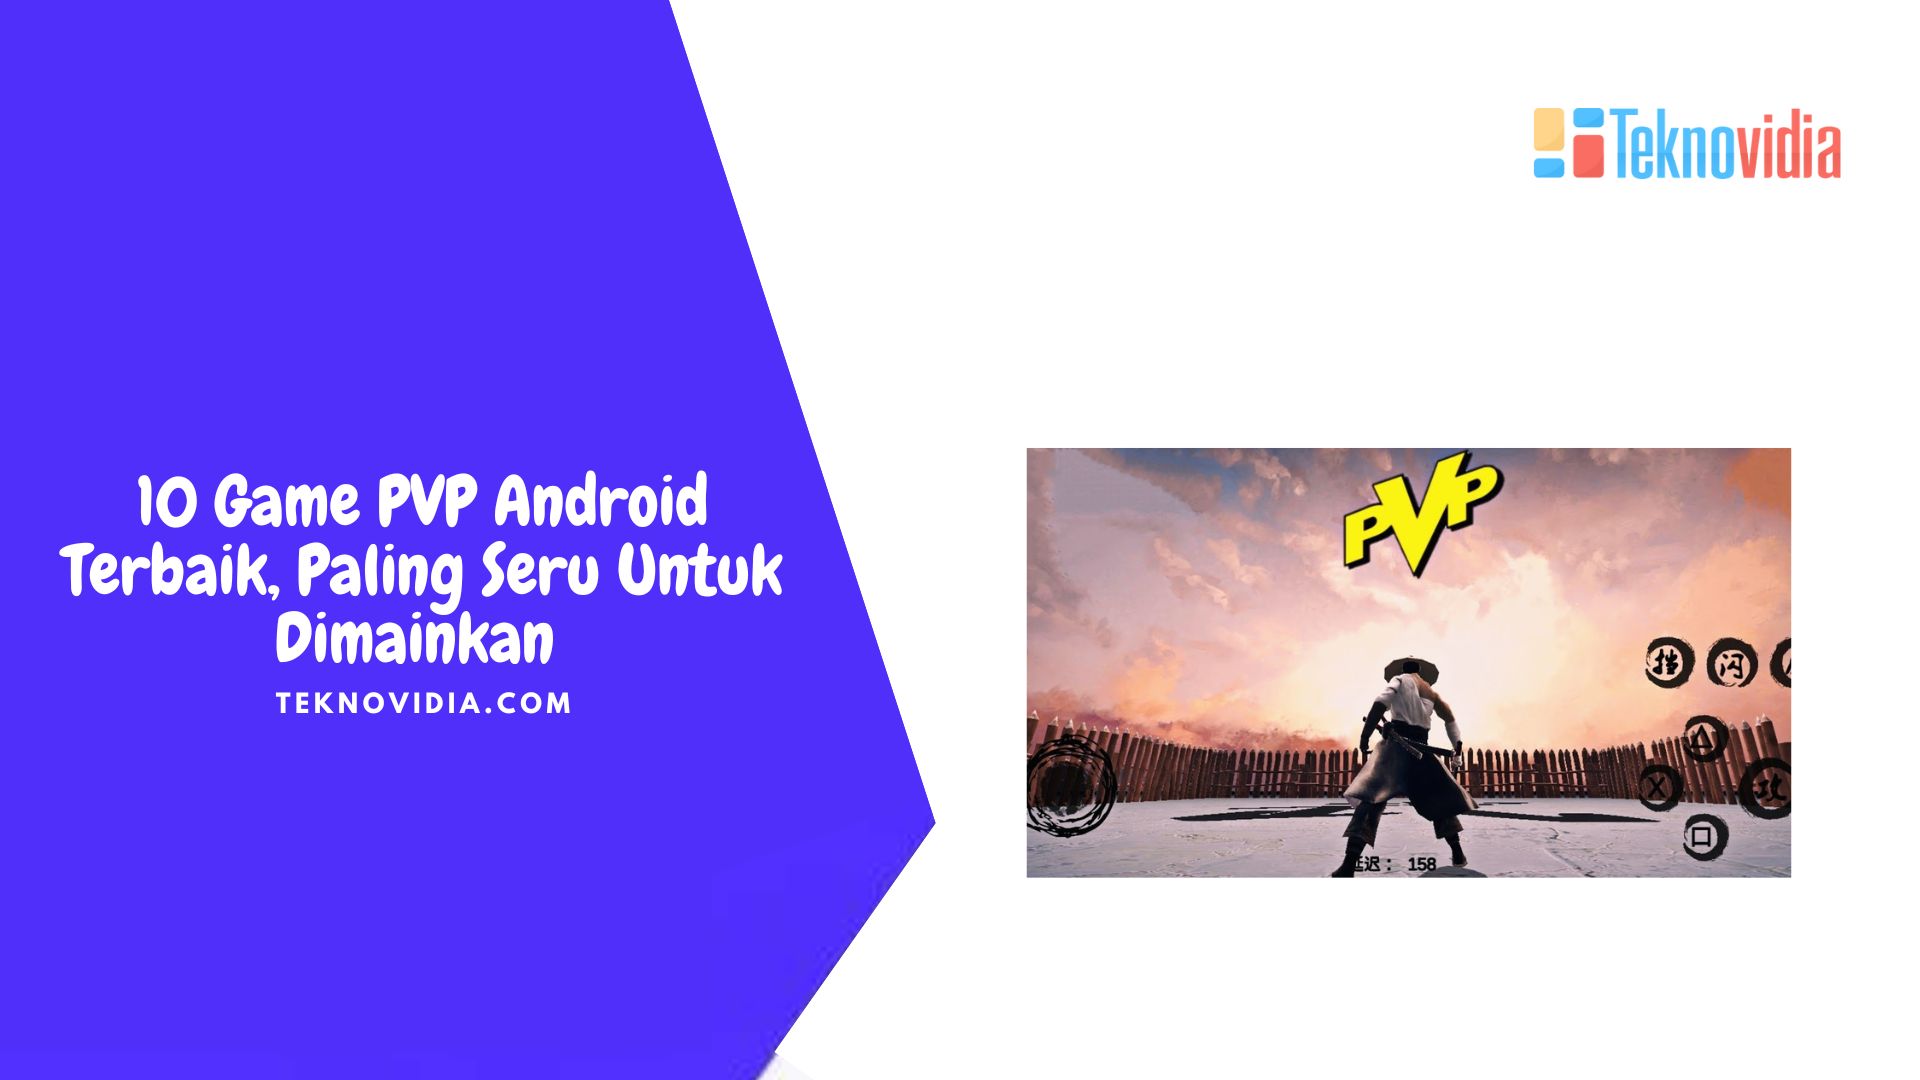 10 Game PVP Android Terbaik, Paling Seru Untuk Dimainkan